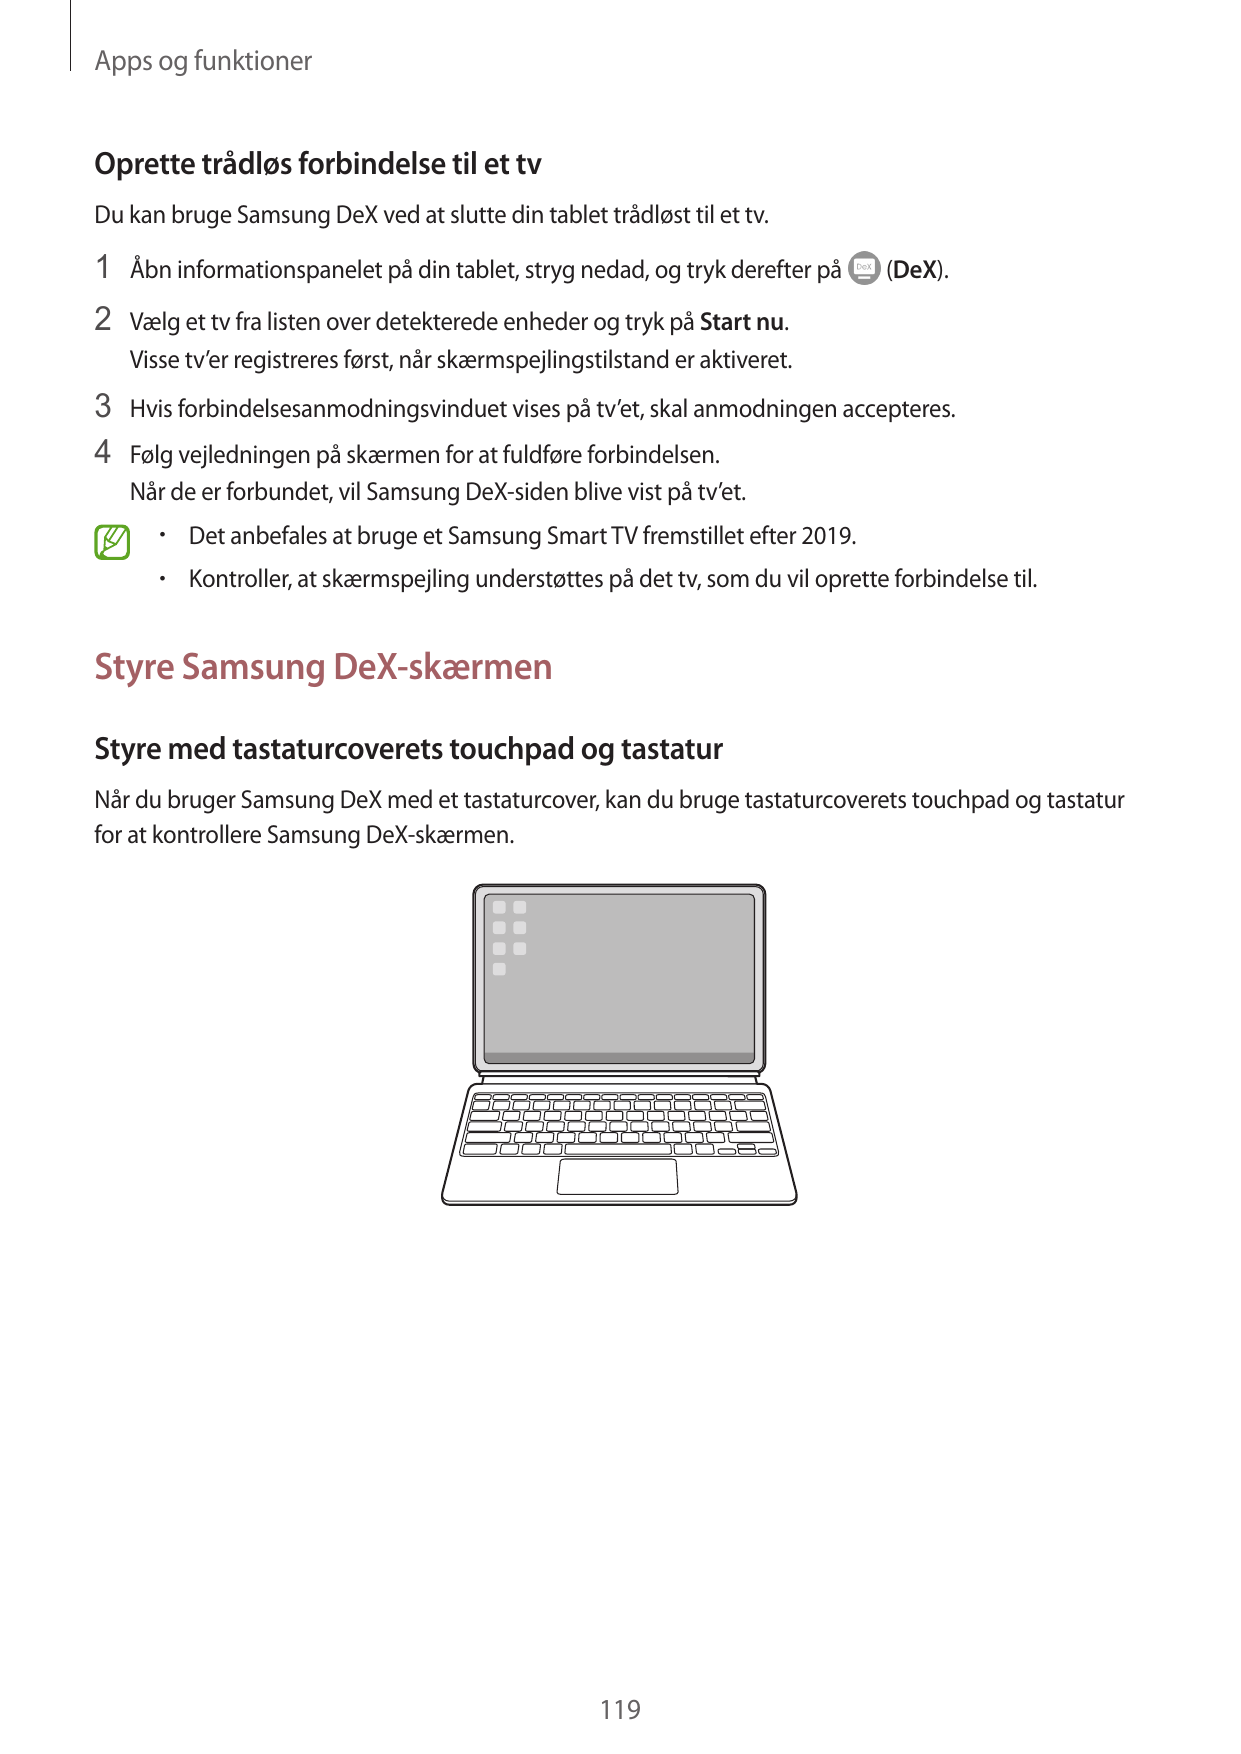 Apps og funktionerOprette trådløs forbindelse til et tvDu kan bruge Samsung DeX ved at slutte din tablet trådløst til et tv.1 Åb